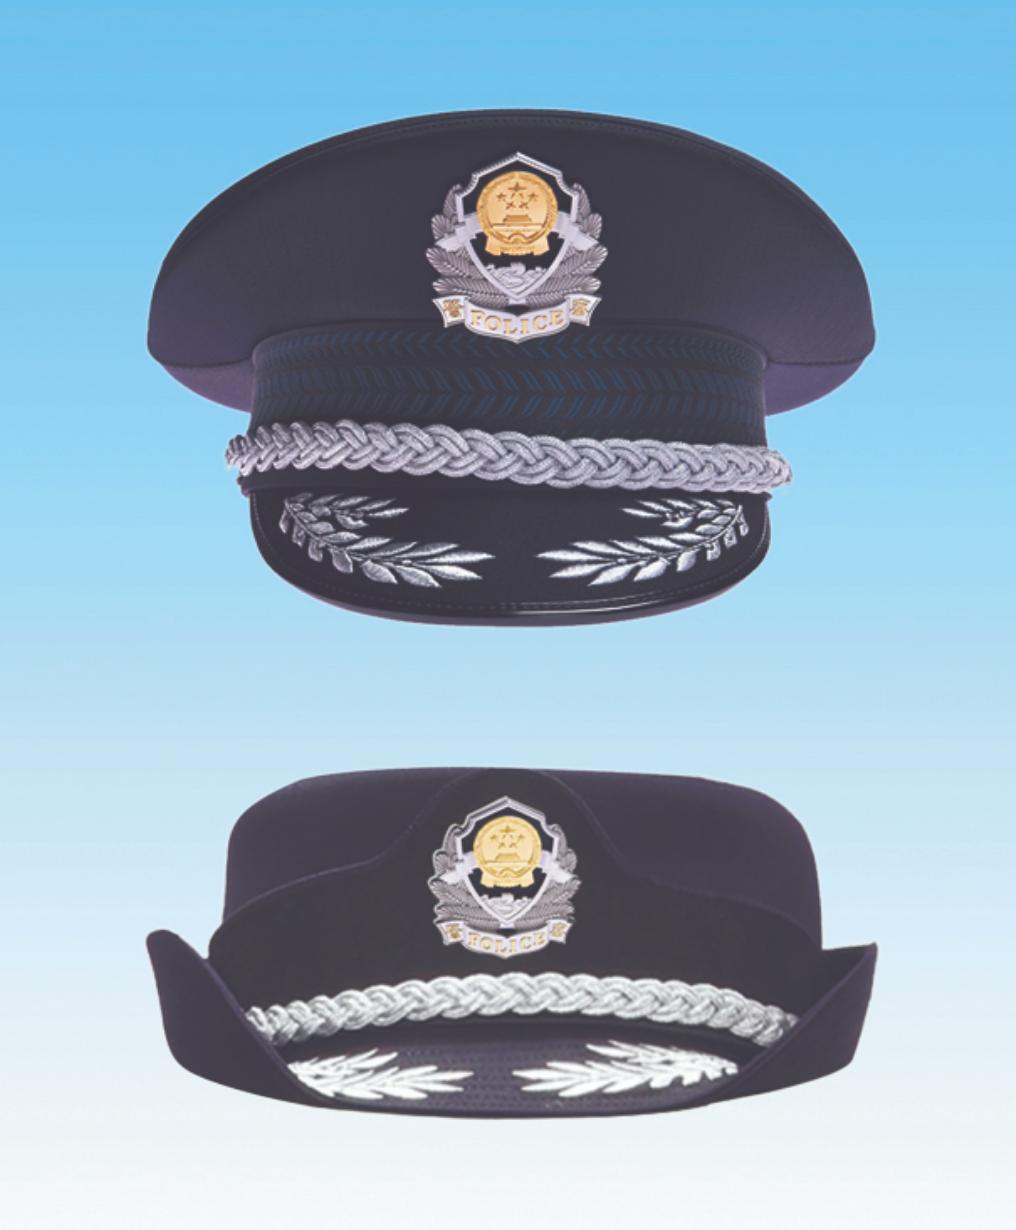 治安警察帽子图片